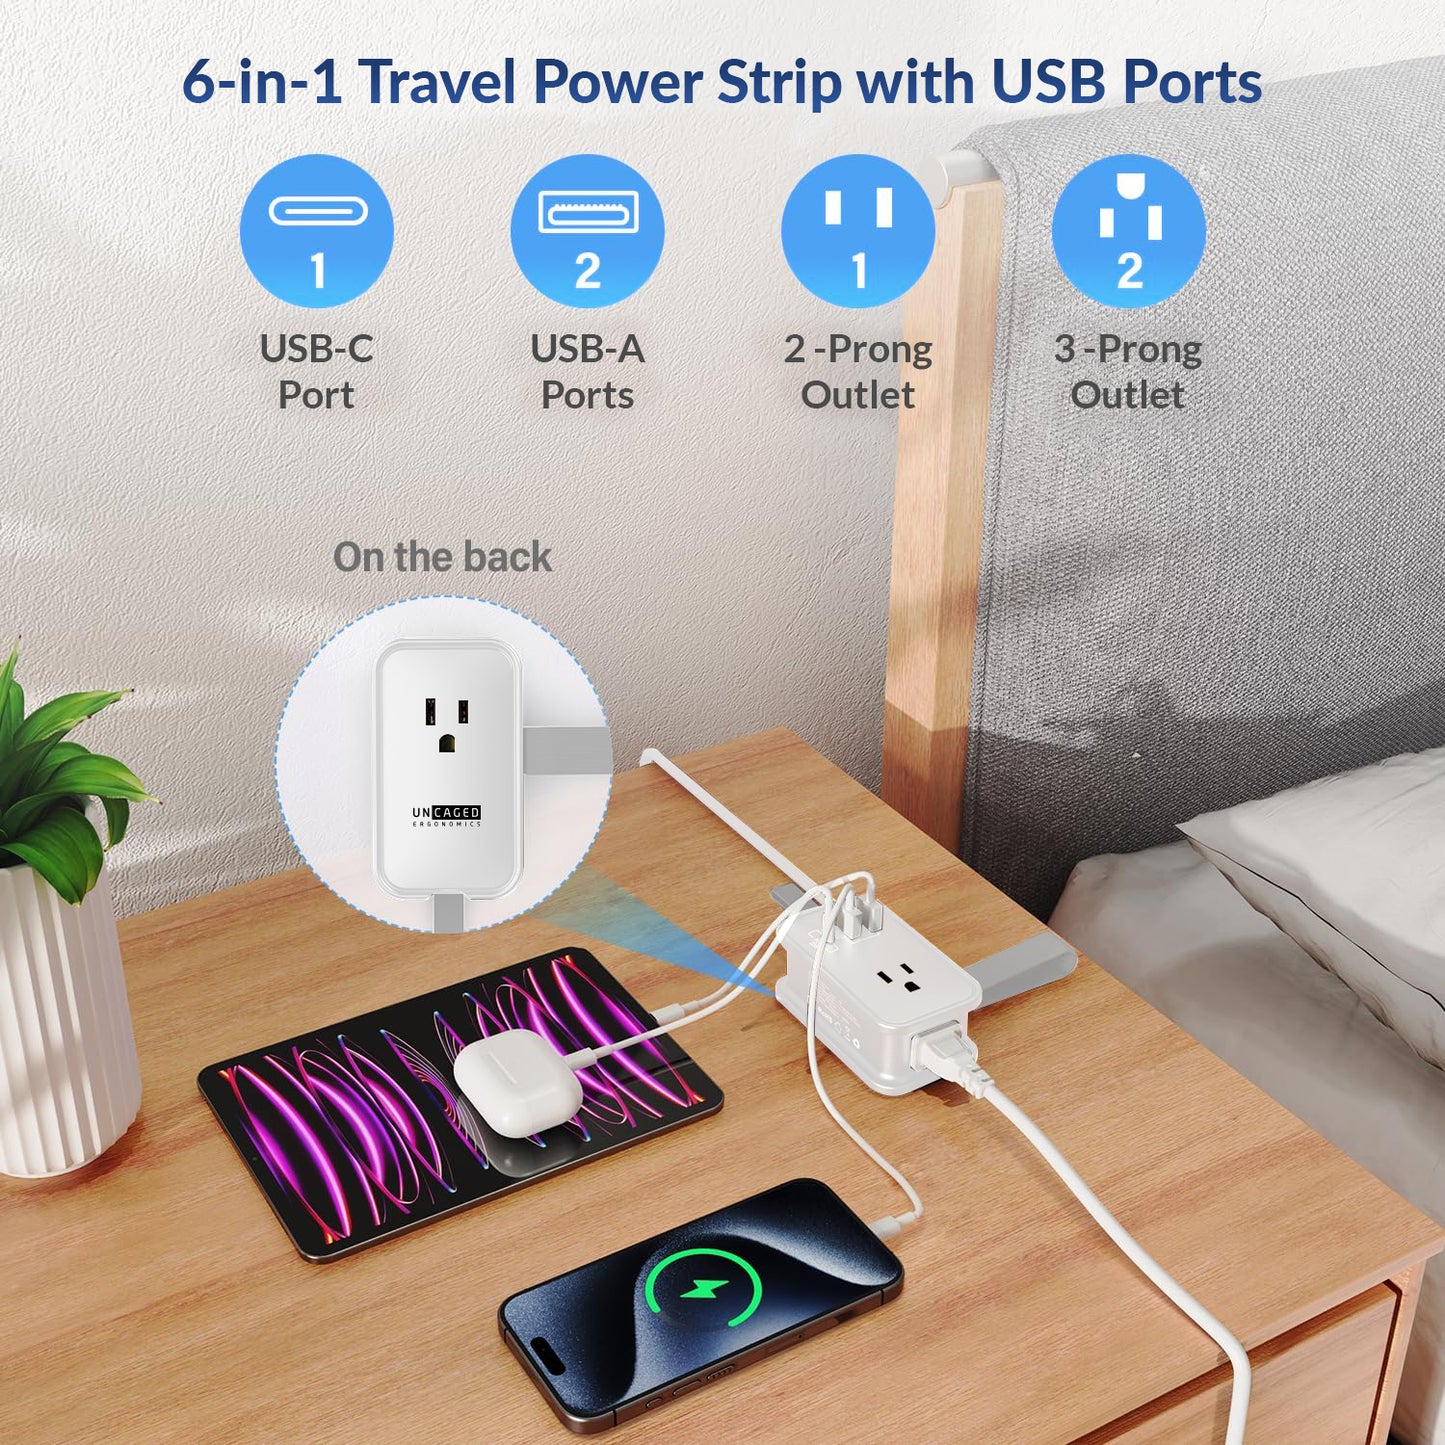 Travel Power Strip with USB Ports